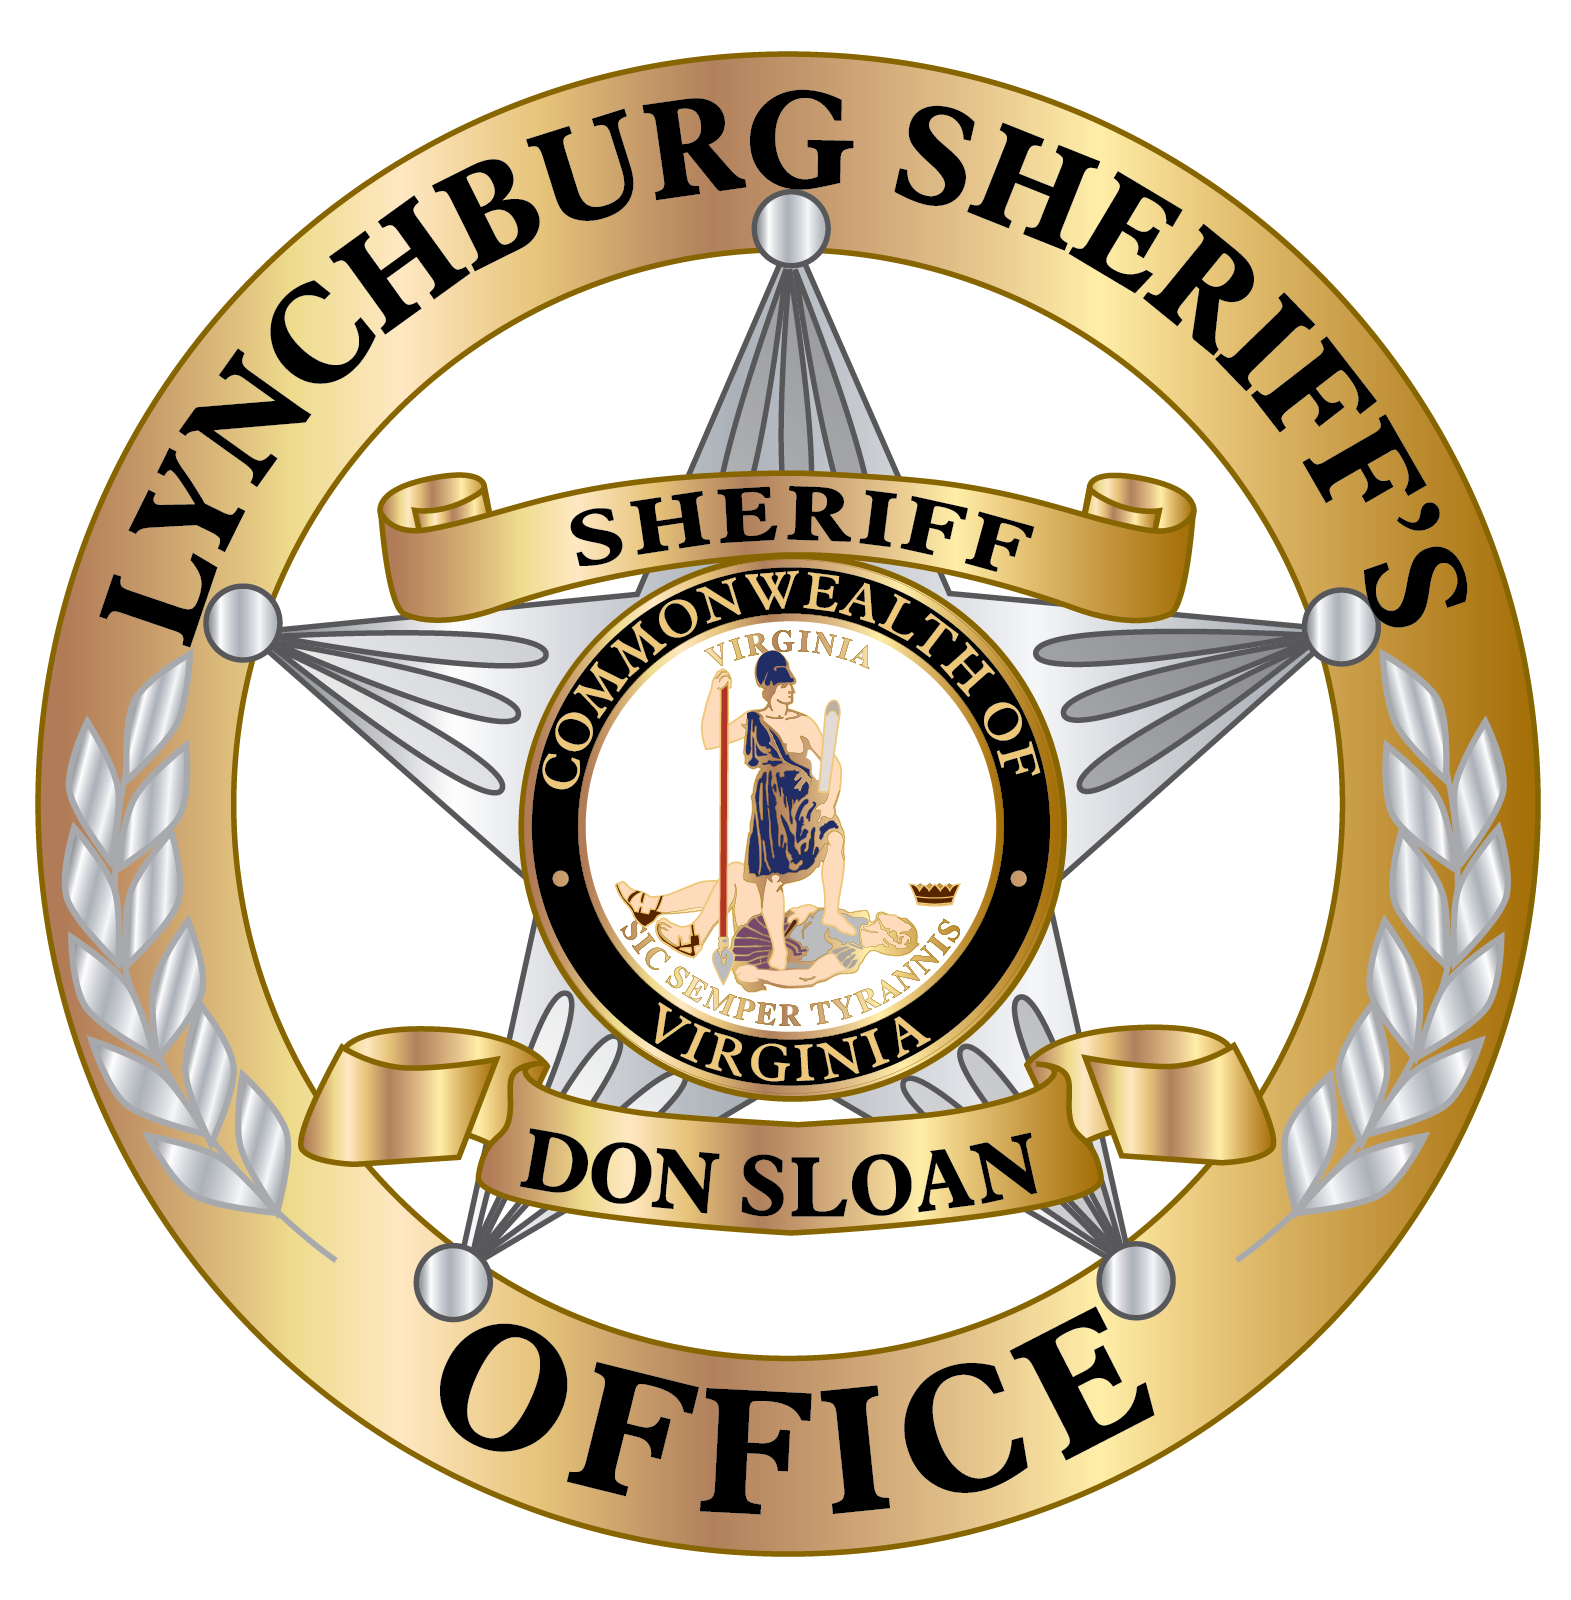 Lynchburg Sheriff's Office